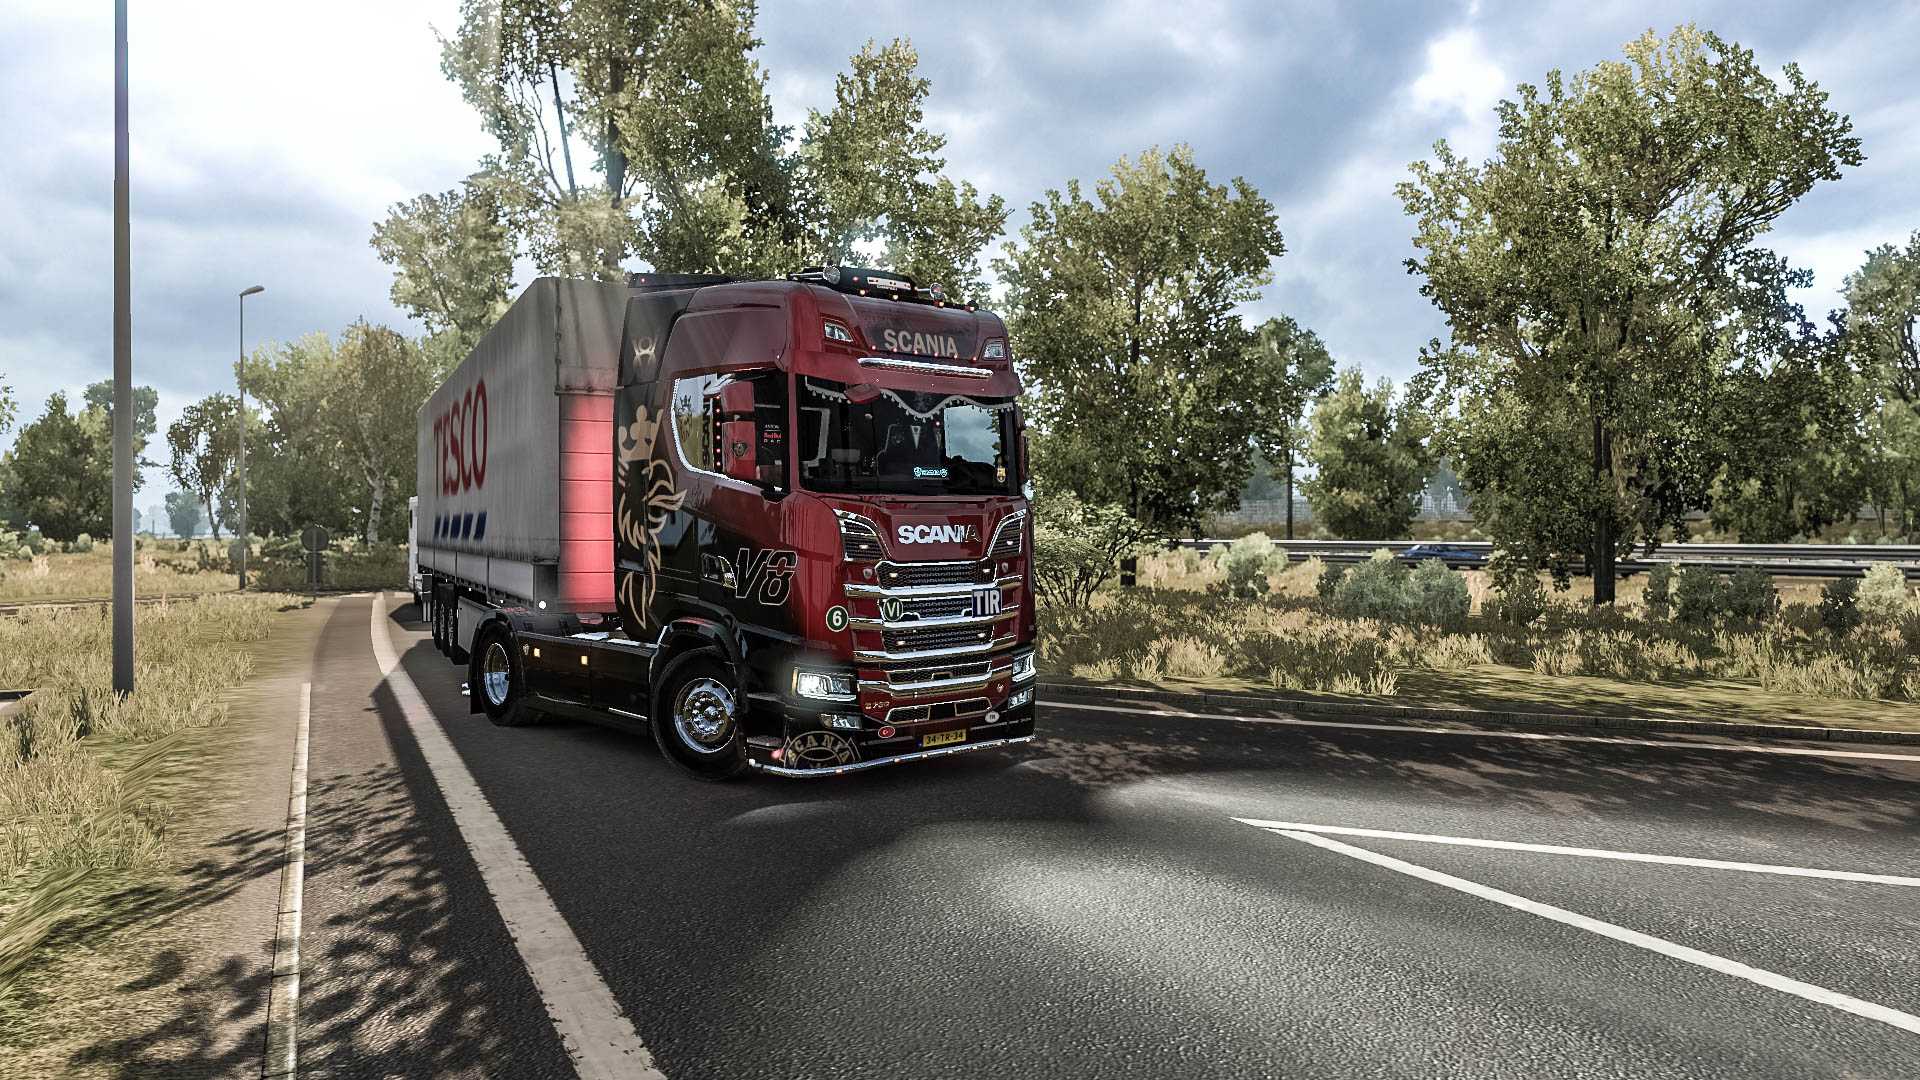 Euro truck simulator 2 — стоит ли покупать и играть?